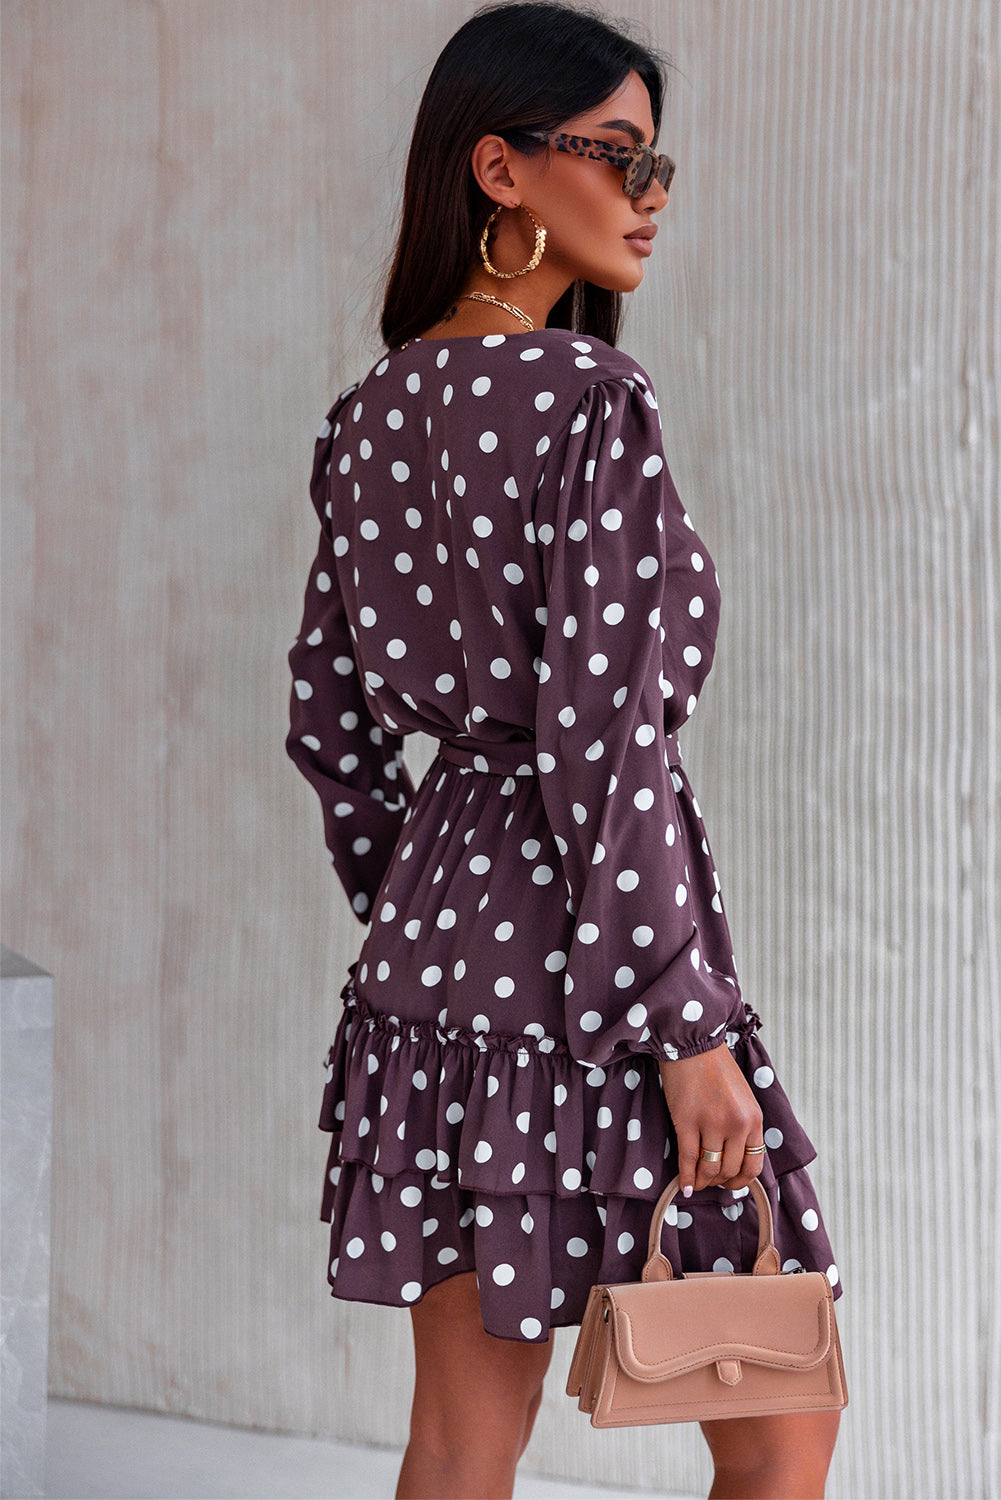 Brown Polka Dot Print Lace-up Ruffled Mini Womens Dress - US2EInc Apparel Plug Ltd. Co